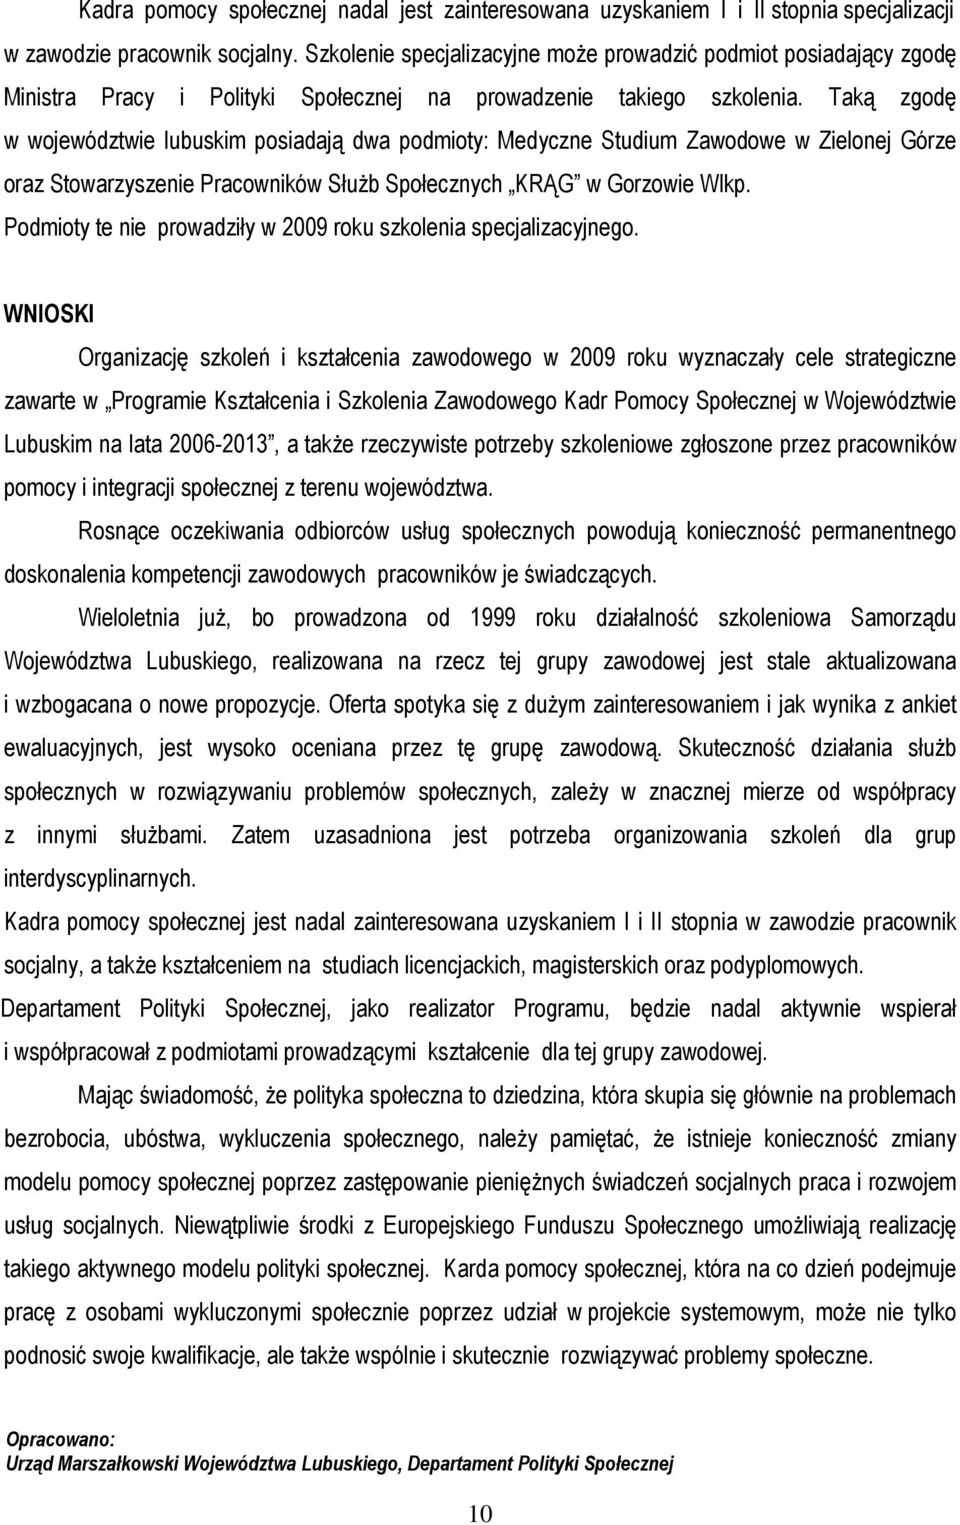 Taką zgodę w województwie lubuskim posiadają dwa podmioty: Medyczne Studium Zawodowe w Zielonej Górze oraz Stowarzyszenie Pracowników Służb Społecznych KRĄG w Gorzowie Wlkp.